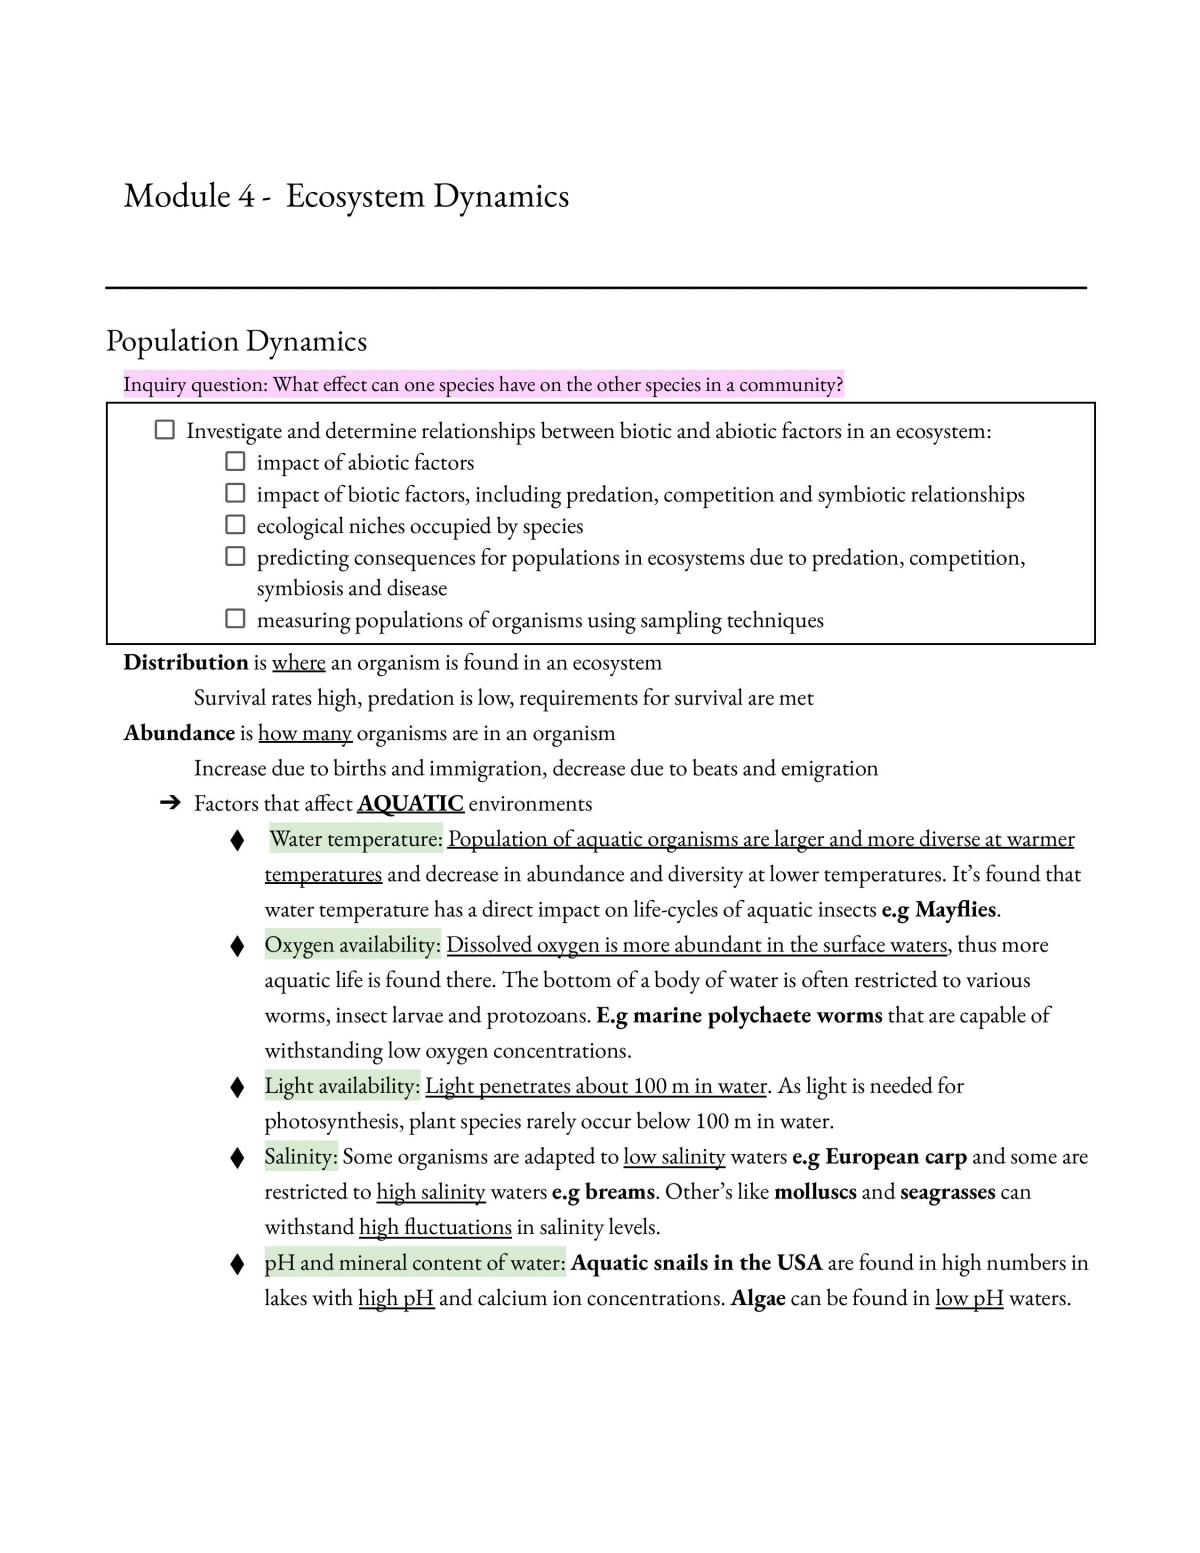 Yr 11 Biology Mod 4 - Ecosystem Dynamics - Page 1